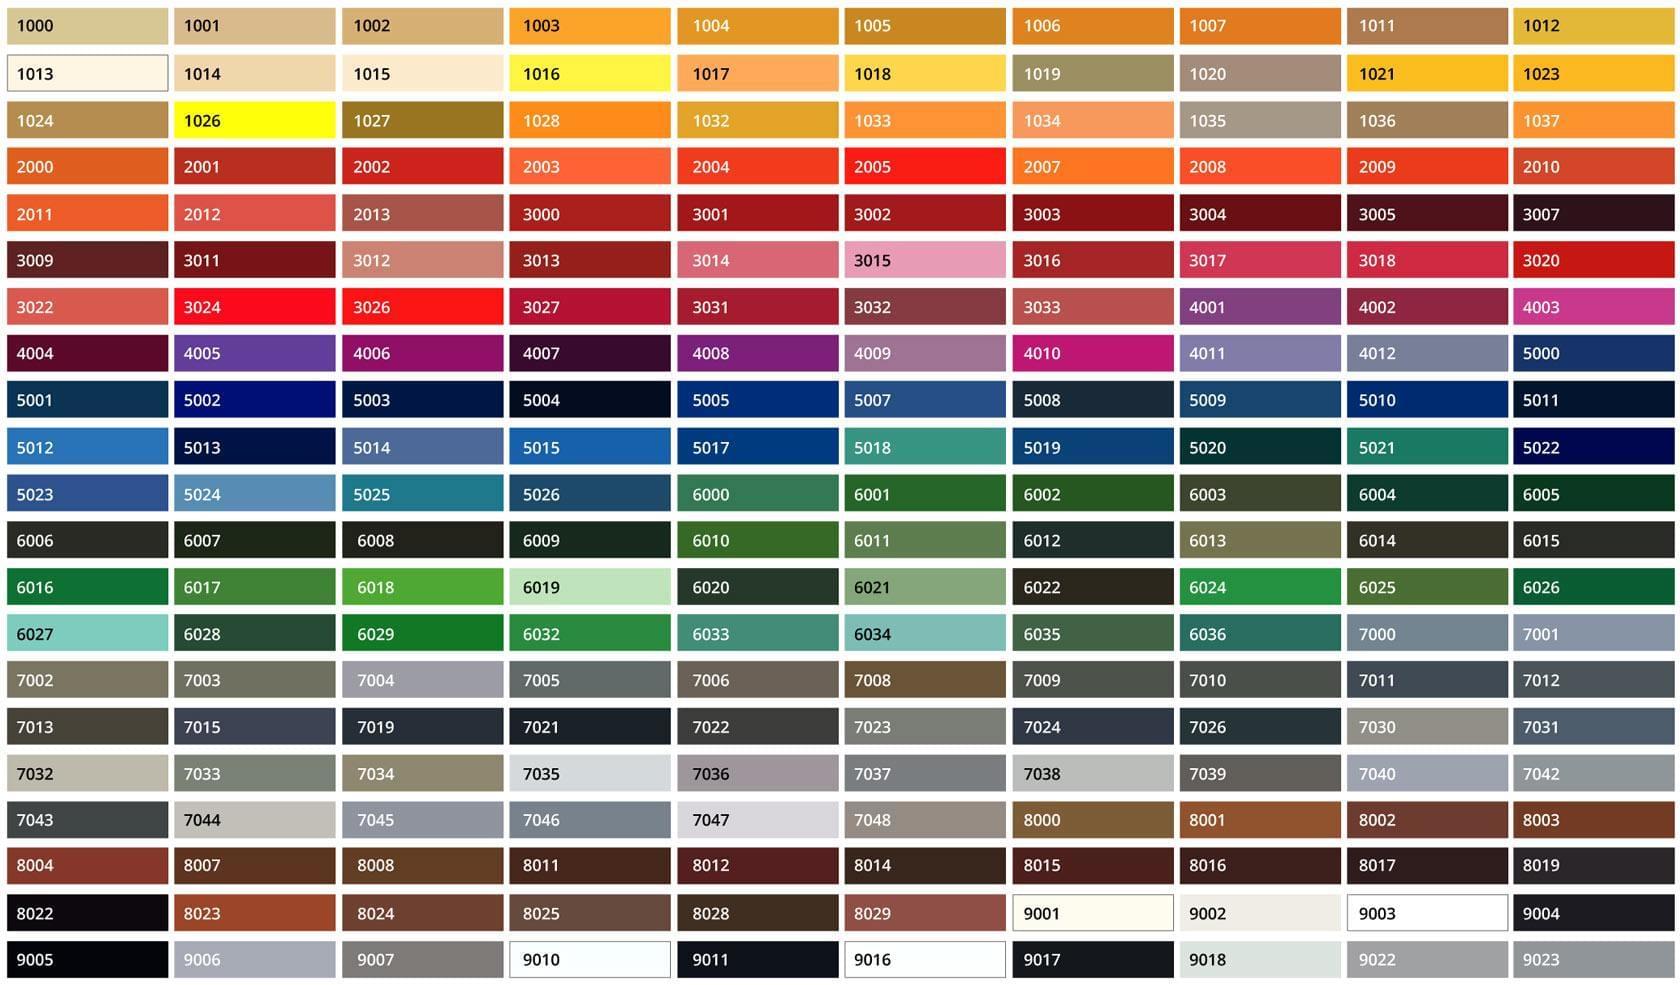 RAL Colour chart